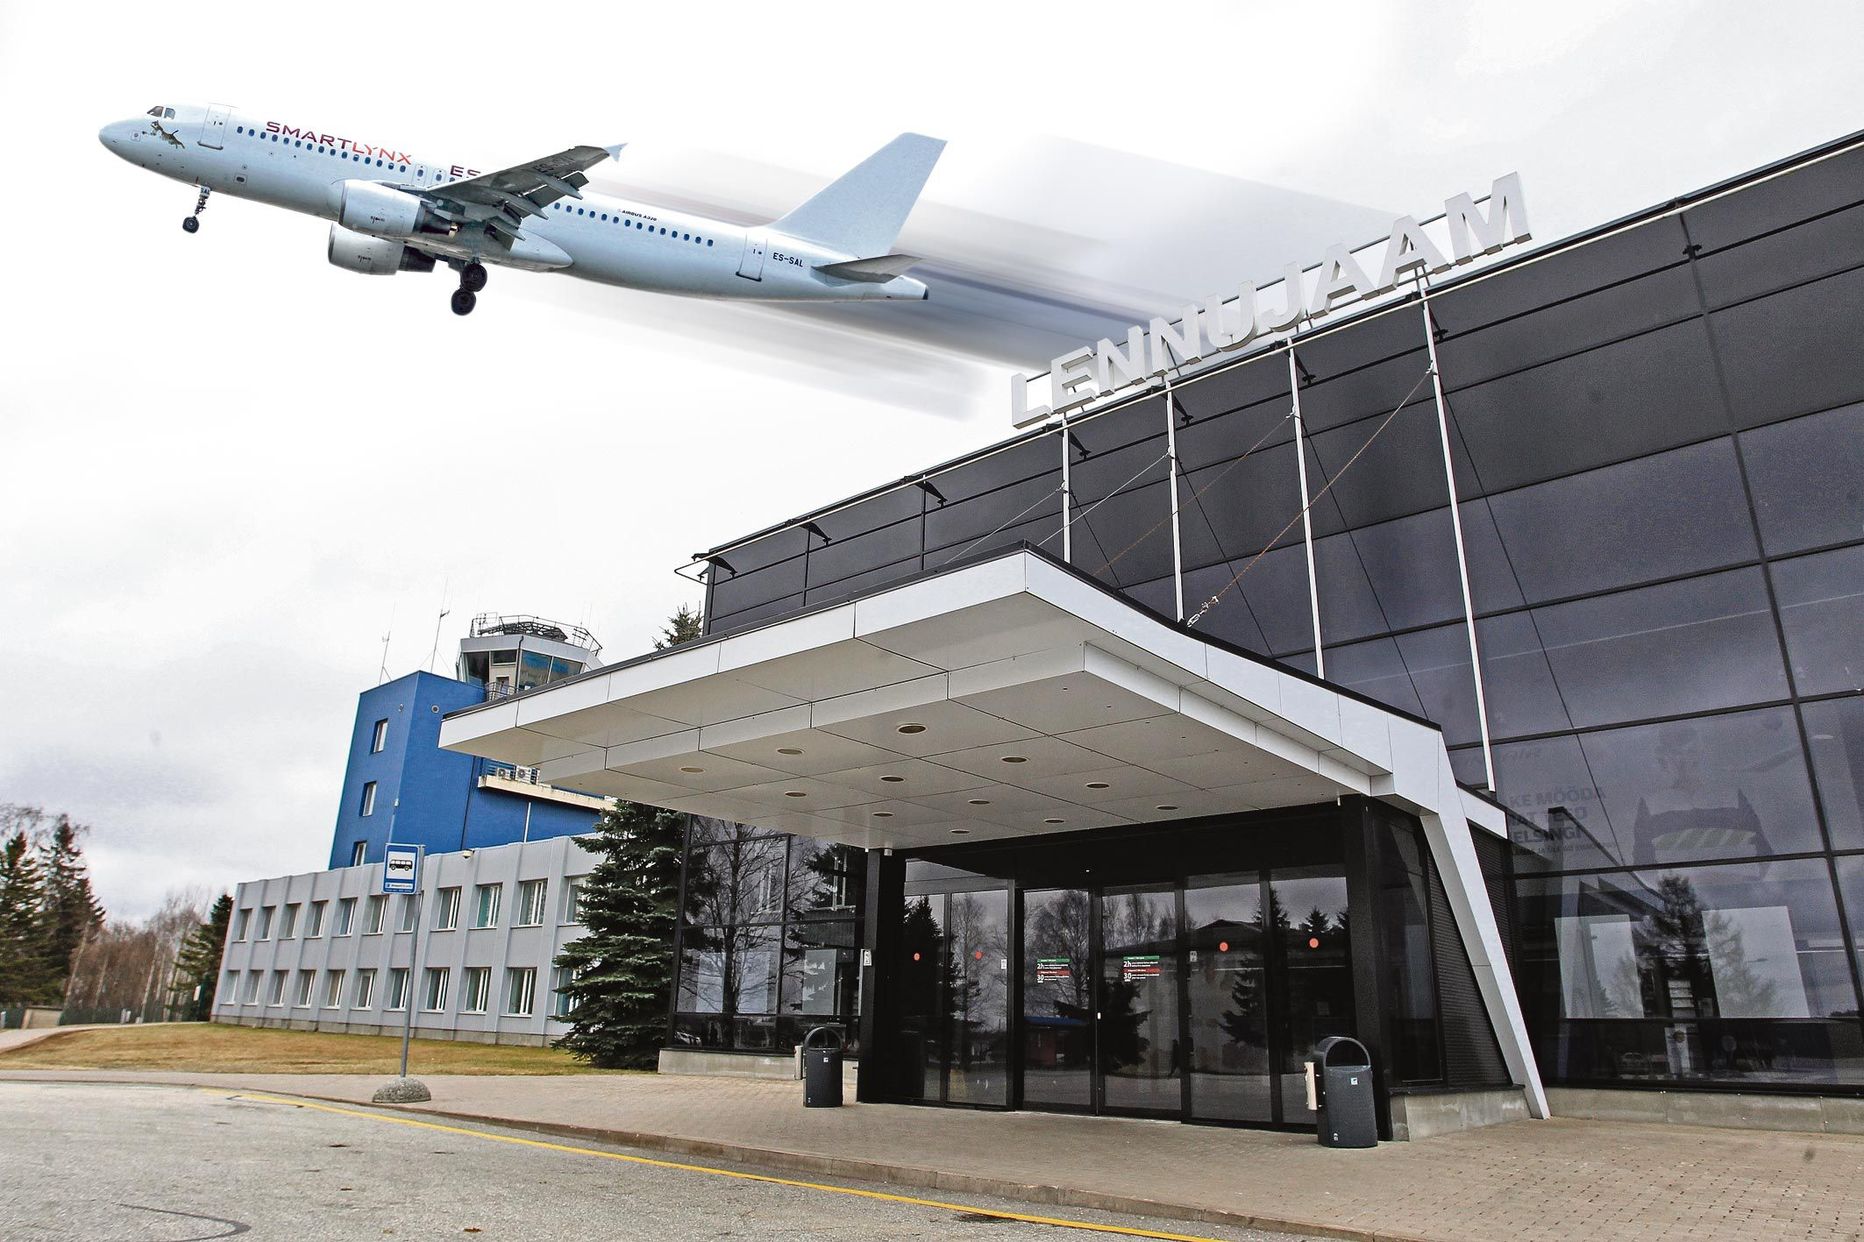 Eesti reisikorraldajad saavad tšarterlendudeks kasutada vaid SmartLynx Airlinesi lennukeid, sest see on ainus Eestis tegutsev lennufirma, mis ei tegele liinilendudega.